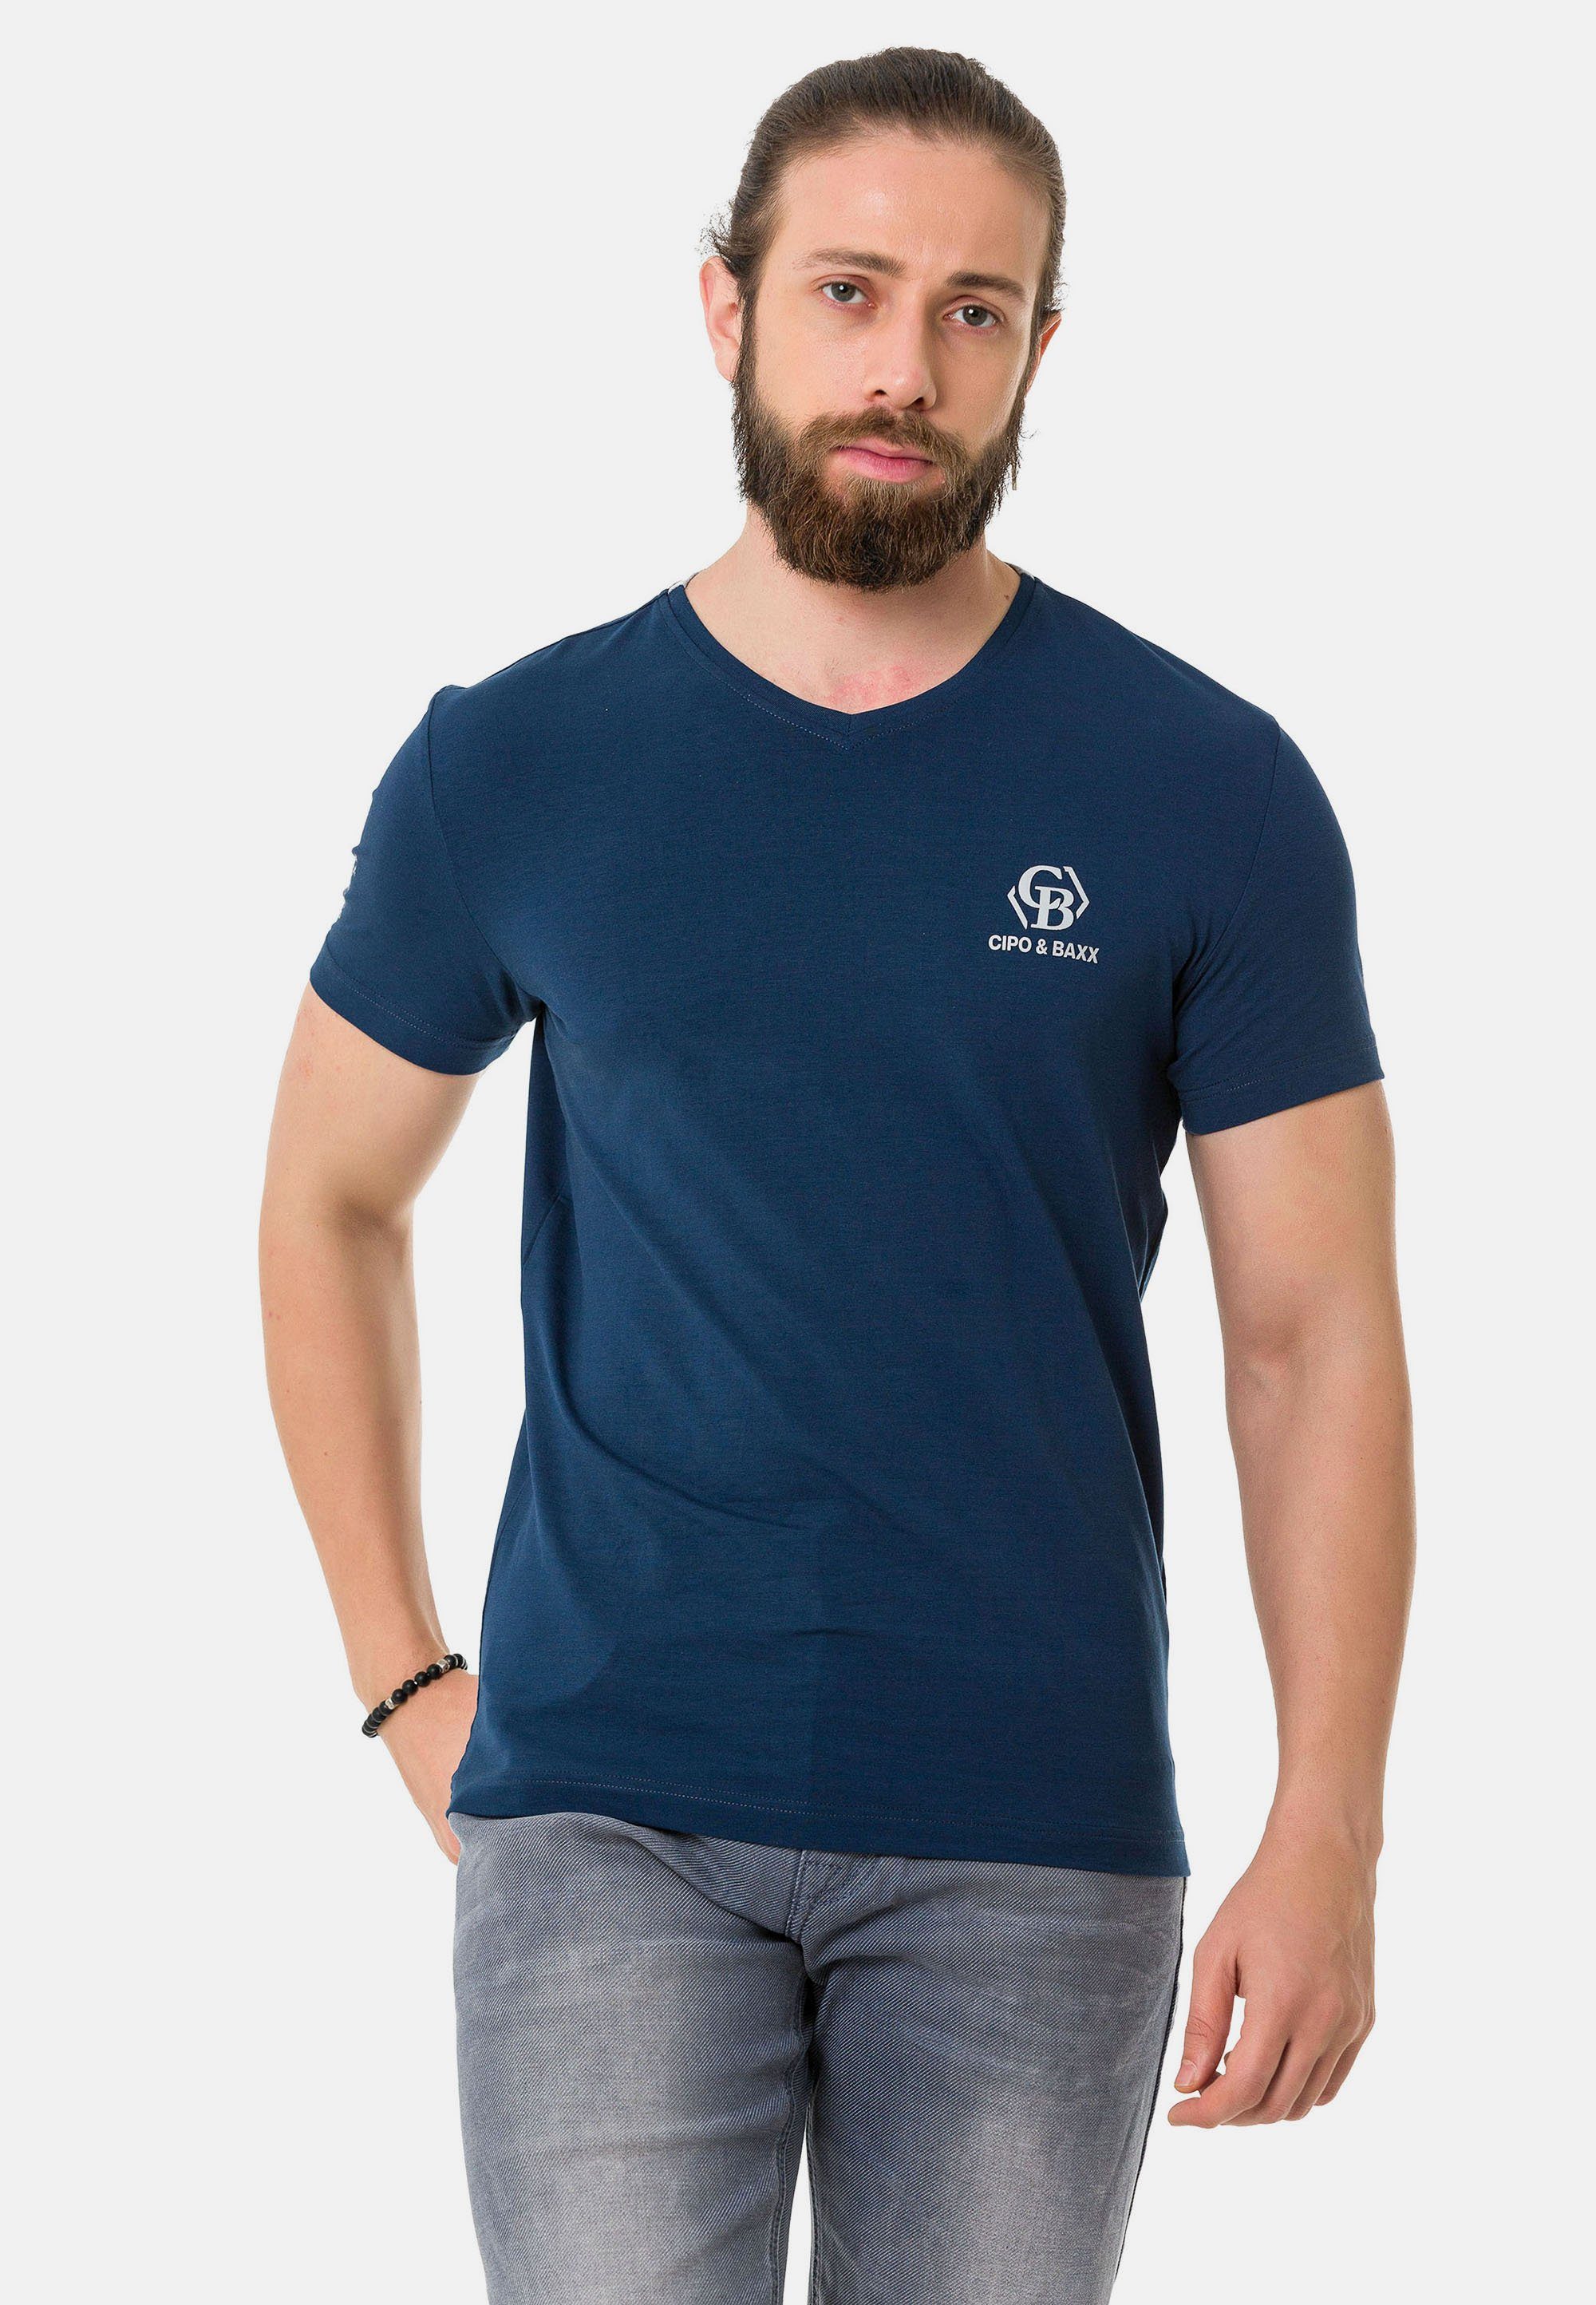 Cipo & Baxx T-Shirt mit Markenlogos dezenten blau